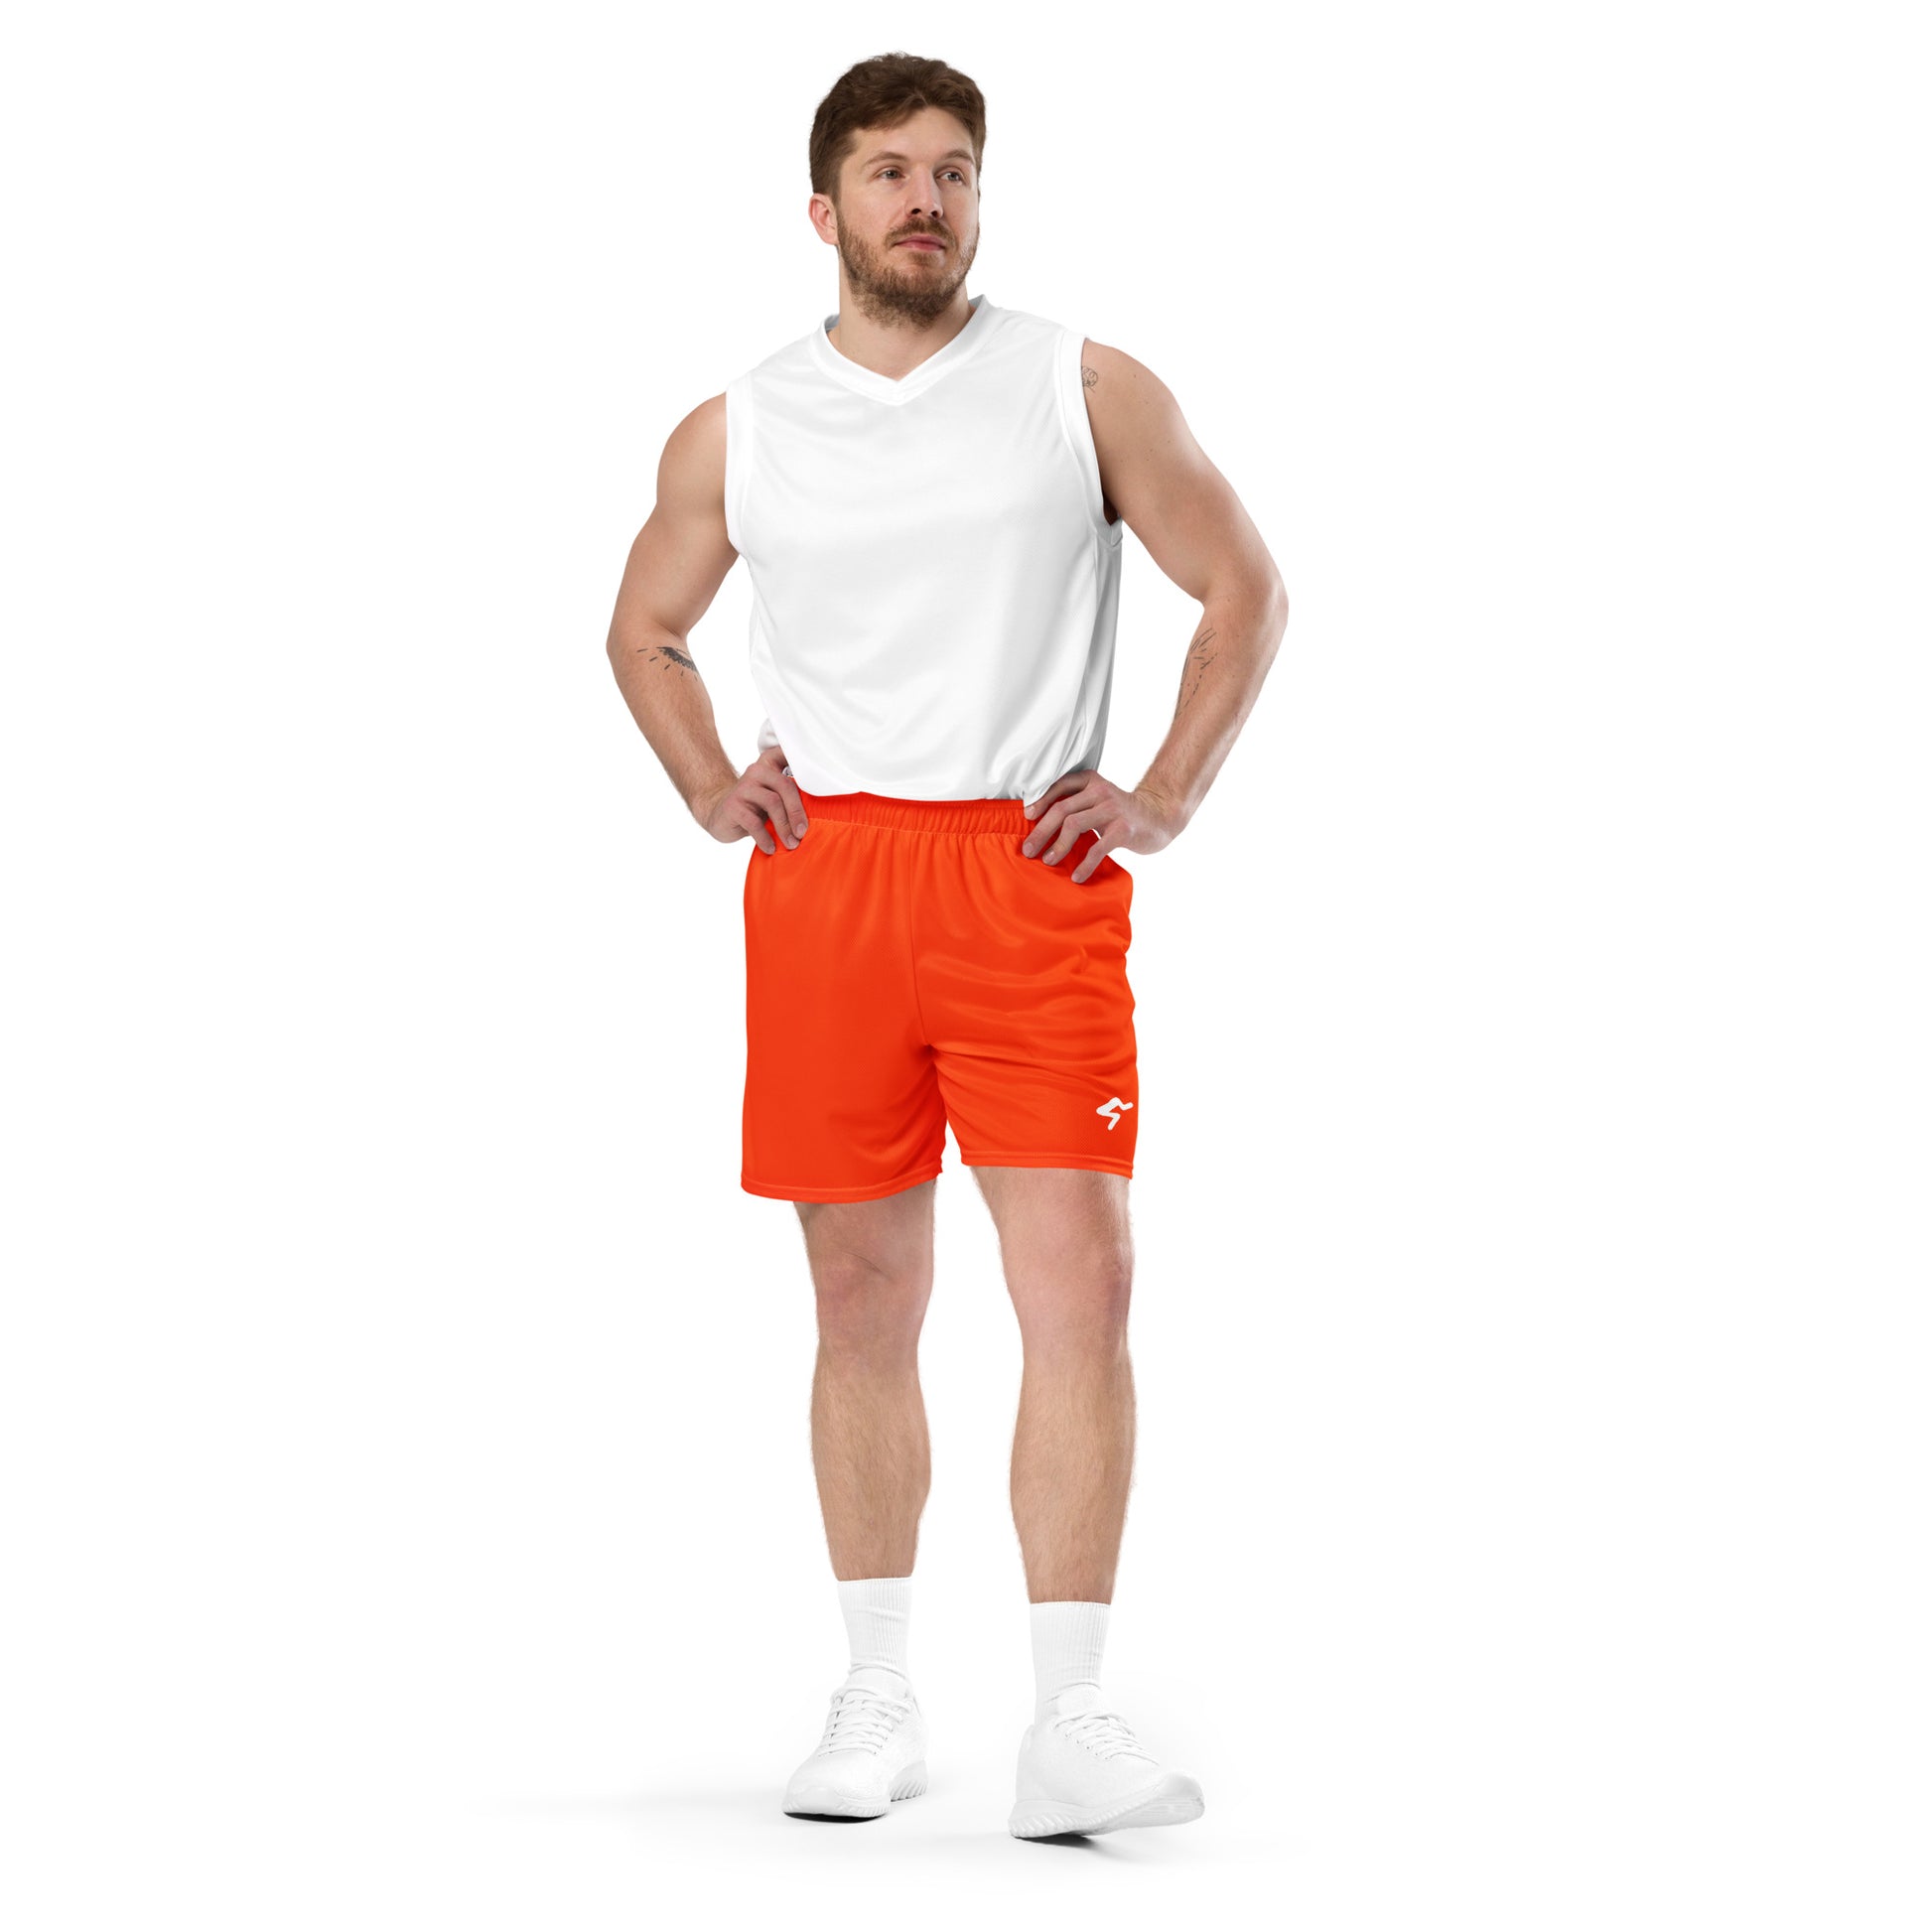 The GymbumUK Logo Blood Orange QuickDry Running Shorts